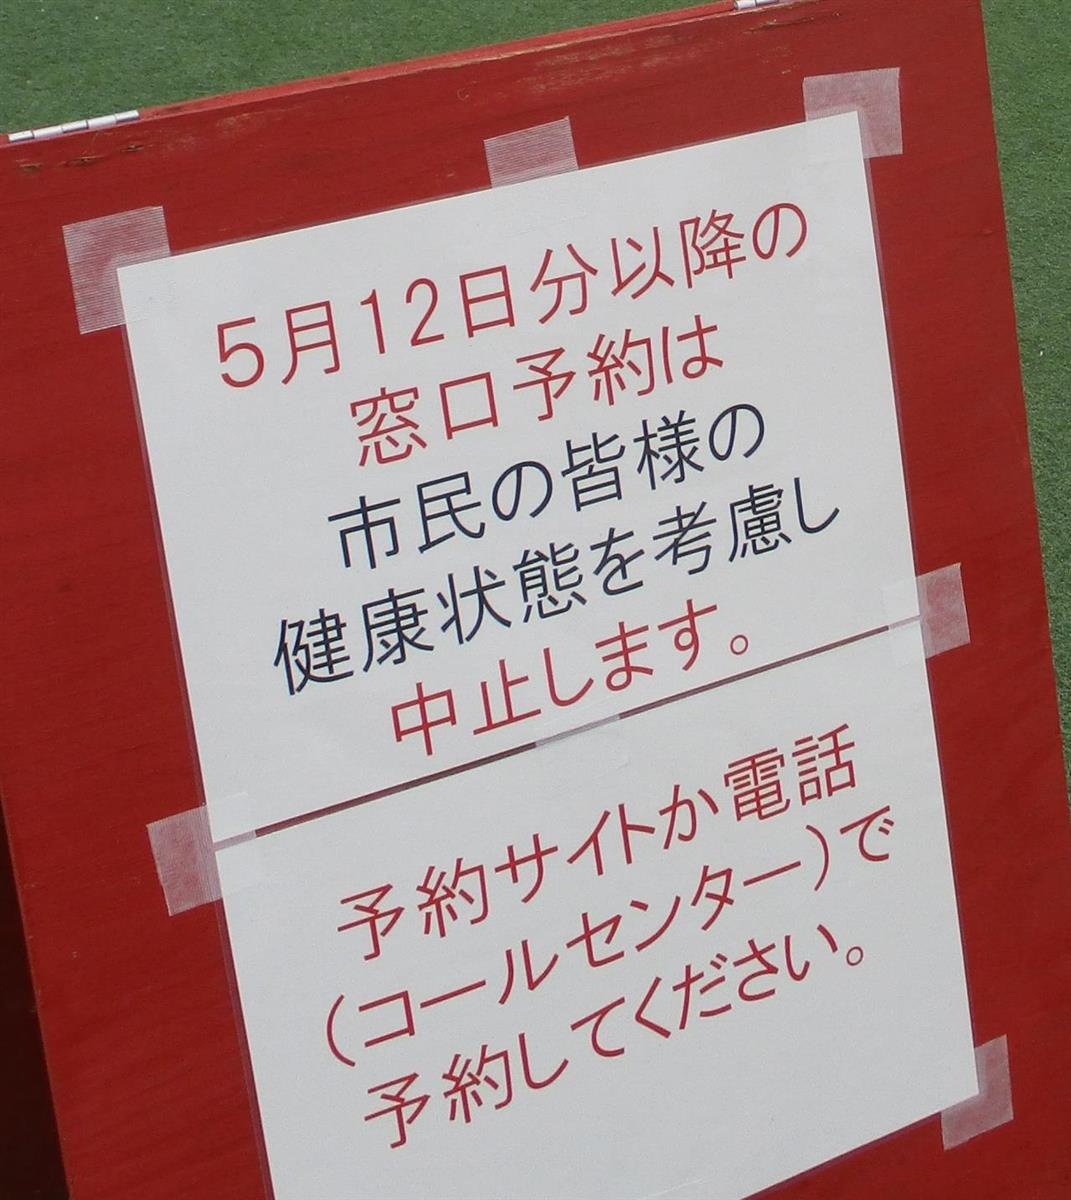 大阪・茨木市、ワクチン接種求める高齢者殺到で窓口予約中止